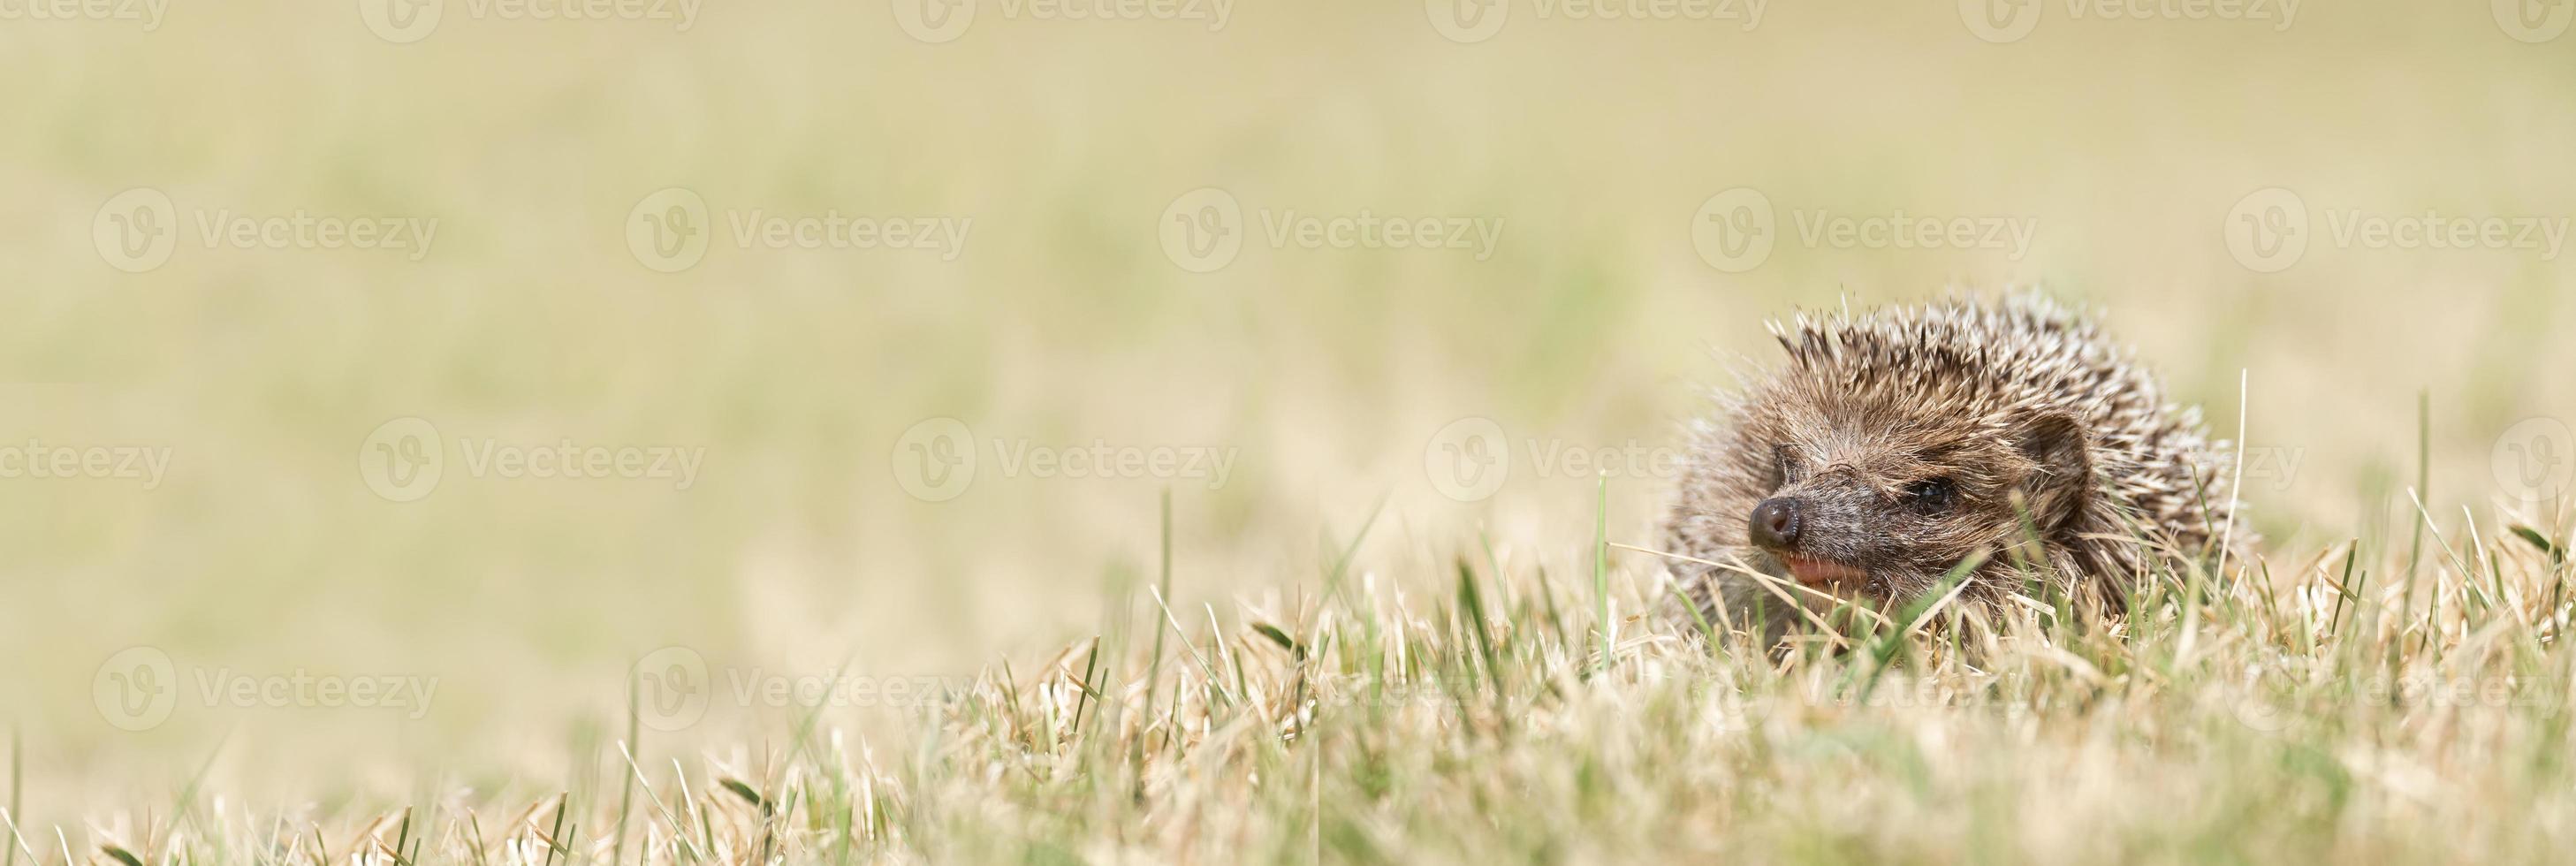 pequeno ouriço fofo no jardim na grama verde foto